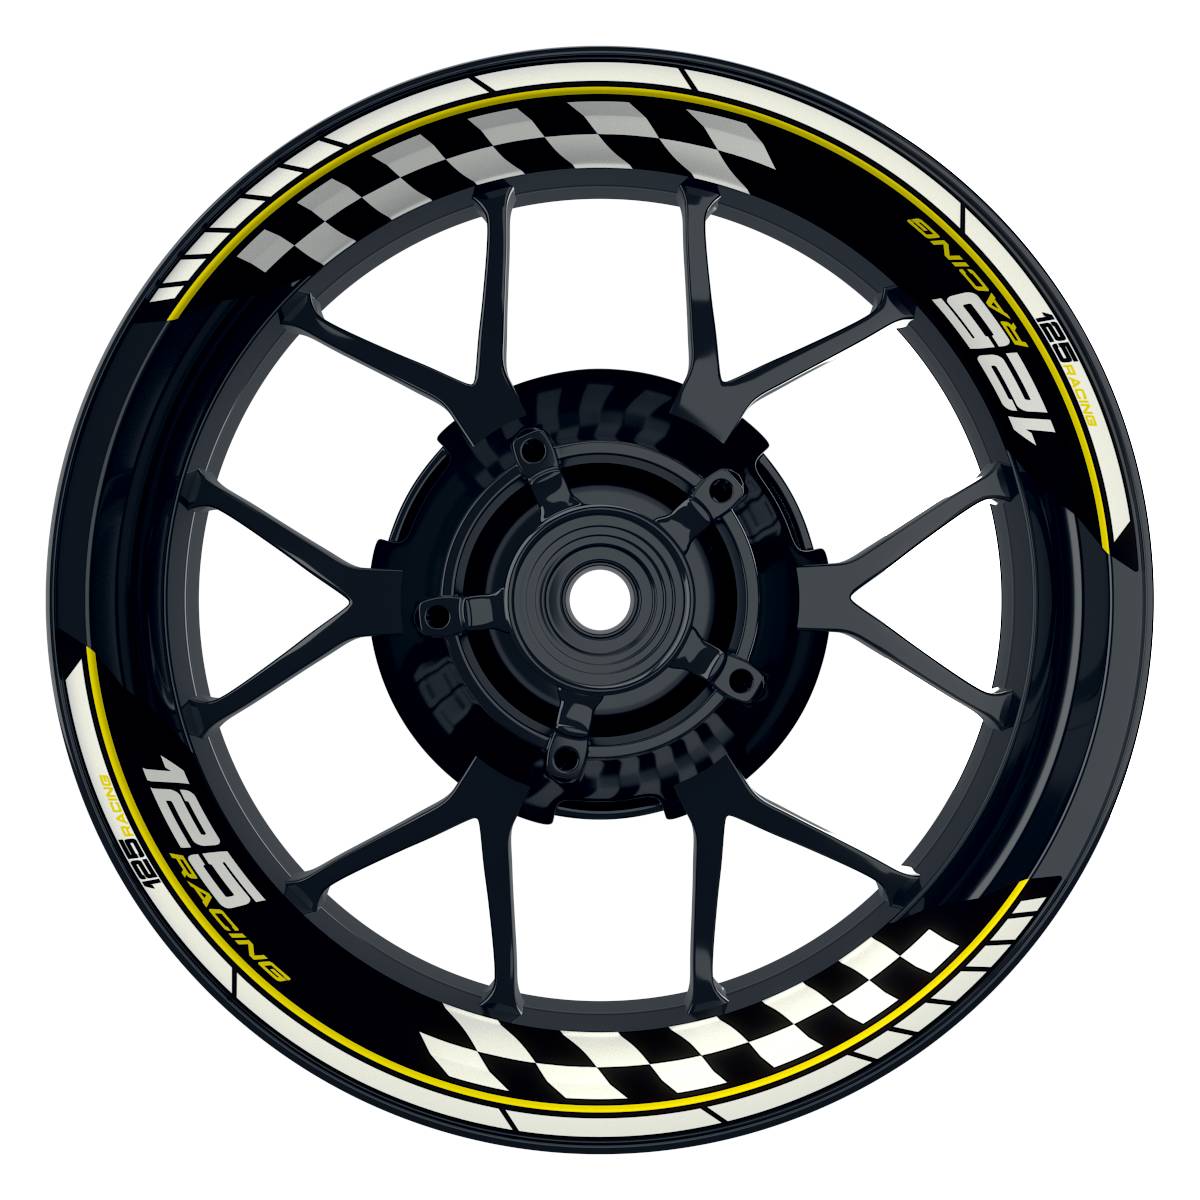 KTM Racing 125 Grid schwarz gelb Frontansicht